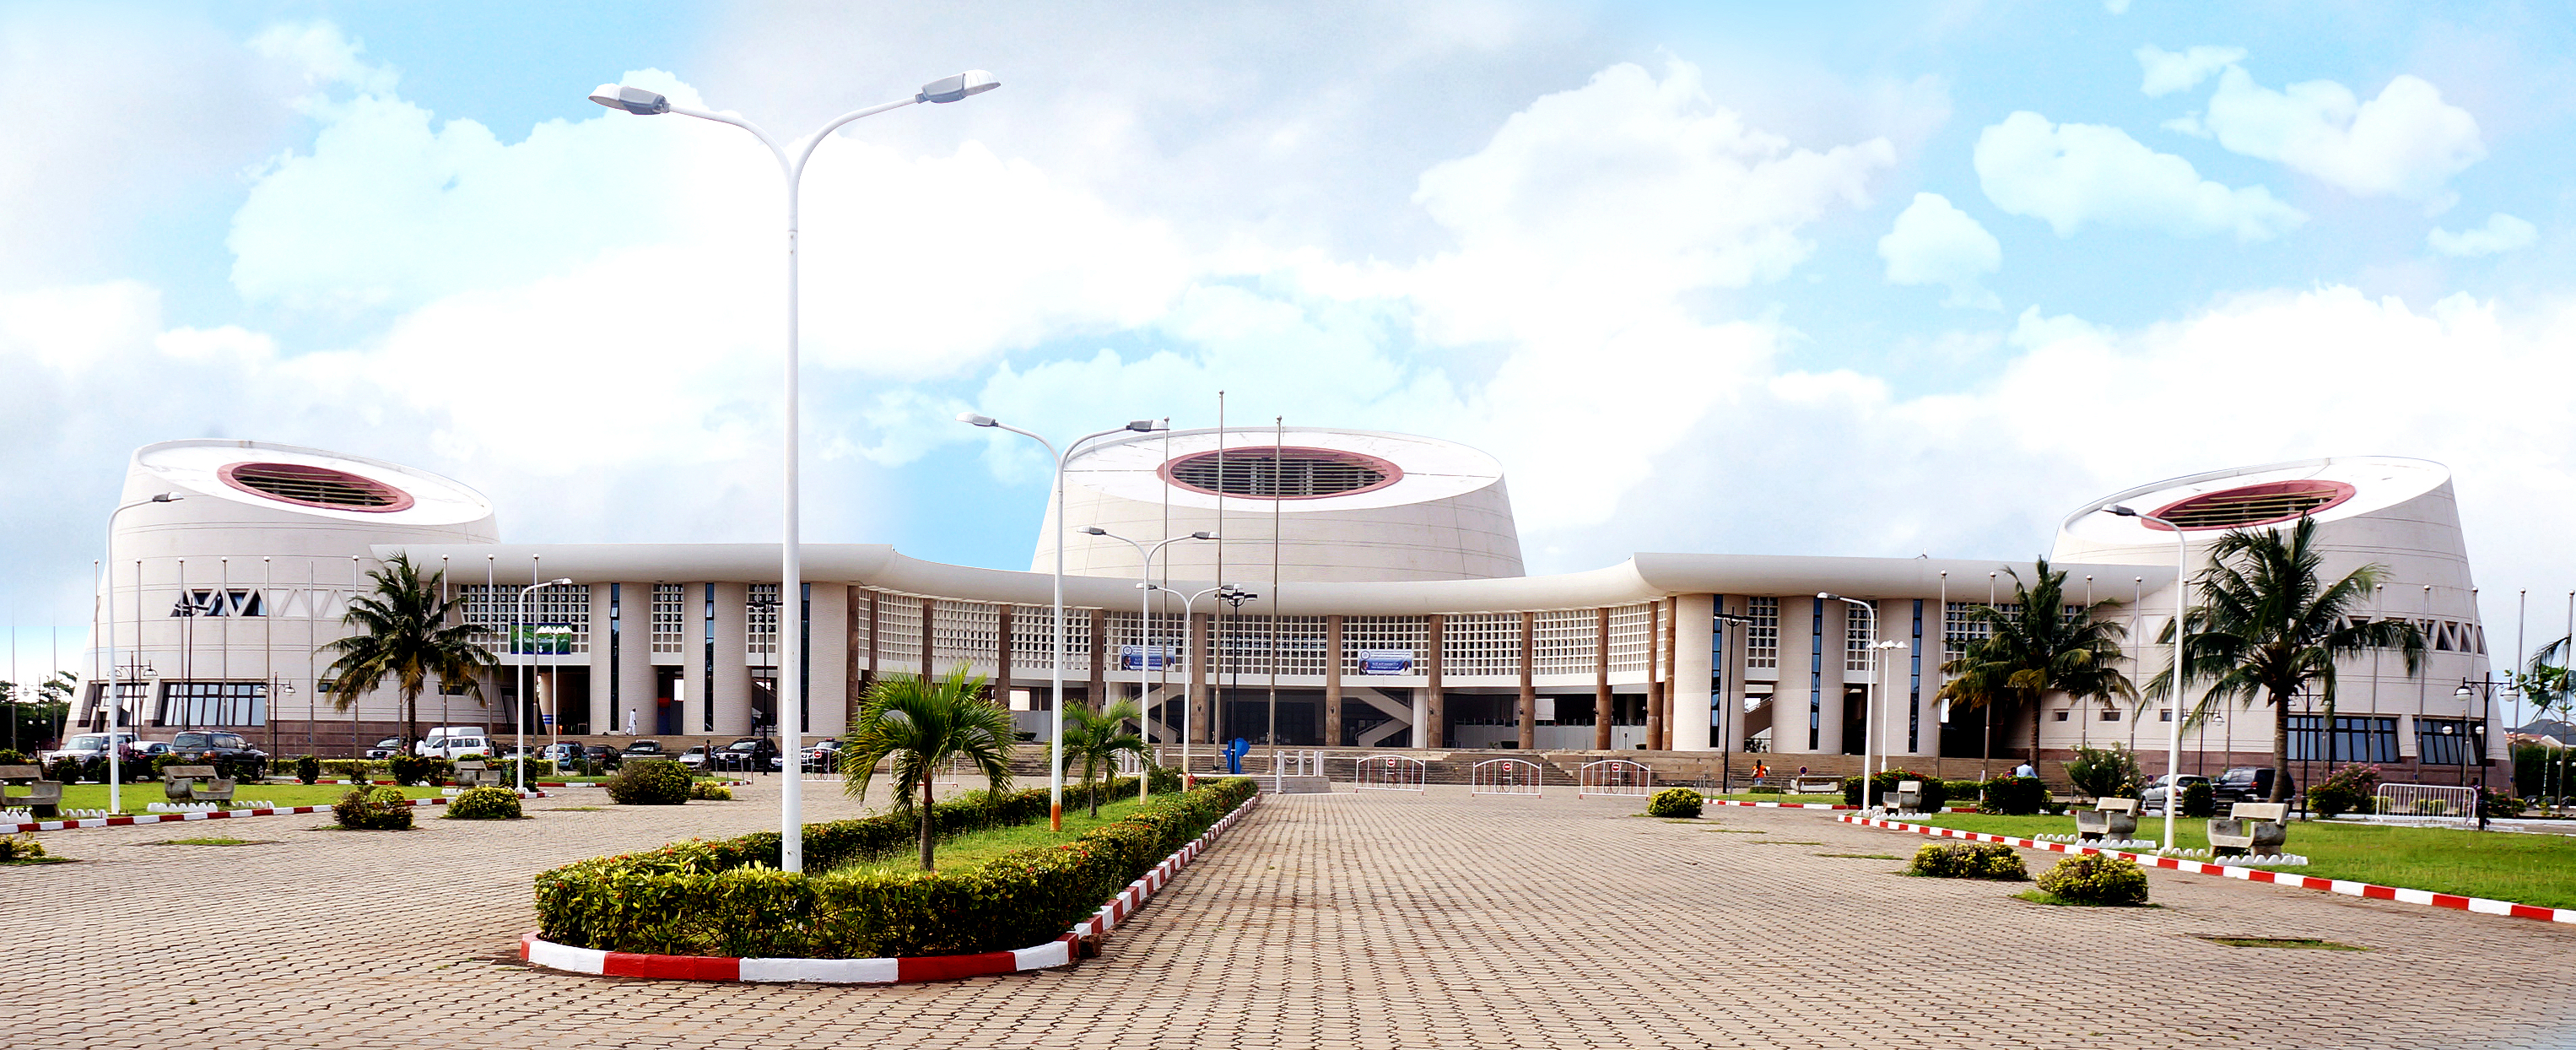 Congress Center of Cotonou, Benin